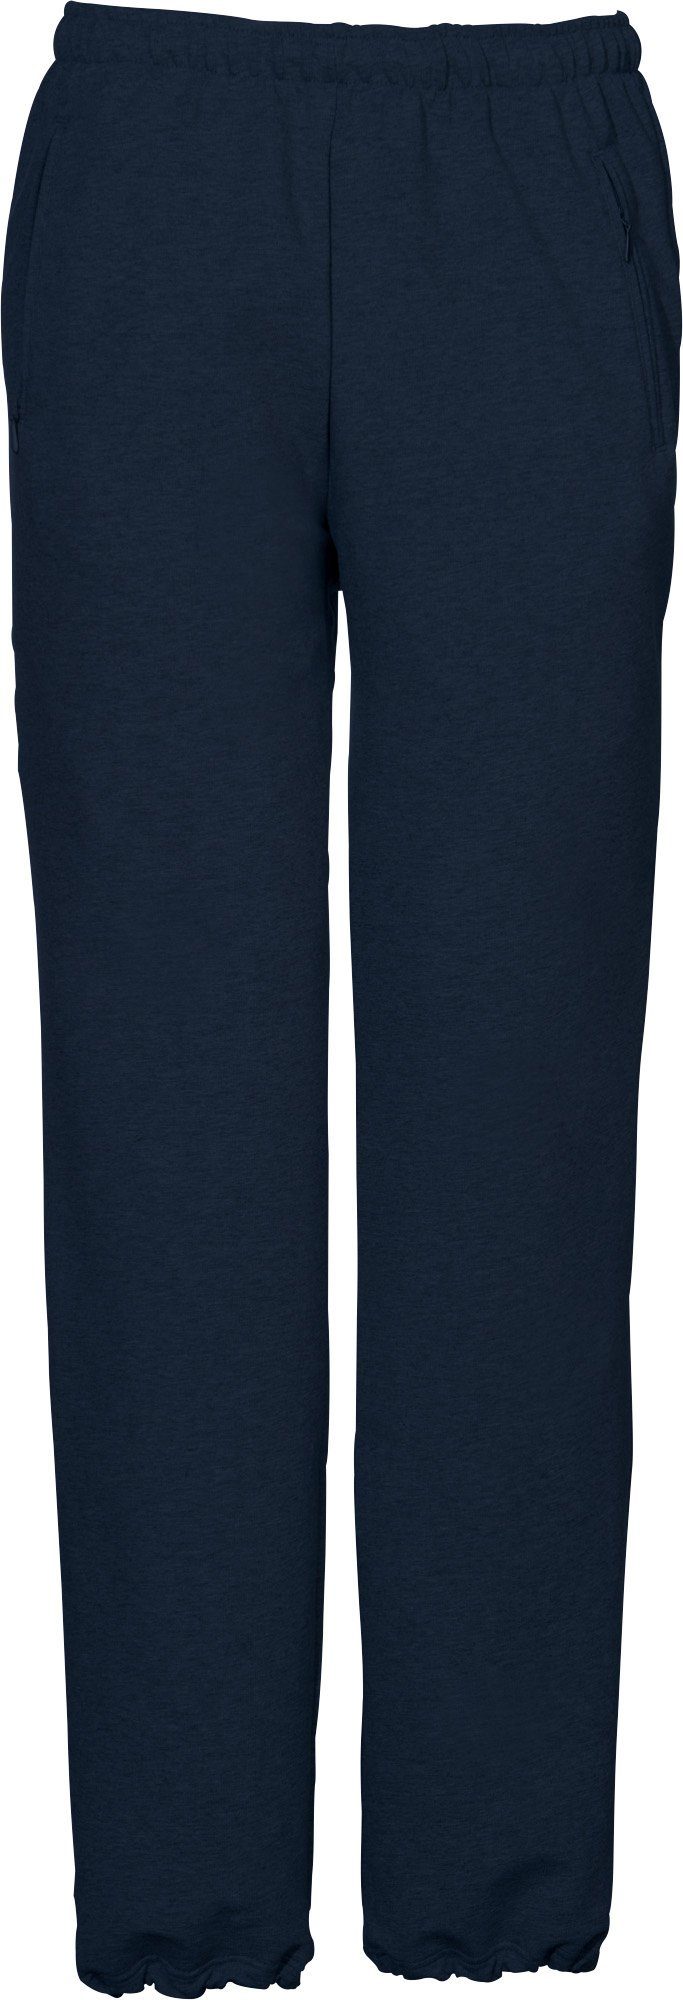 SCHNEIDER Sportswear Uni Jogginghose "HORGENM", lang Herren-Freizeithose dunkelblau